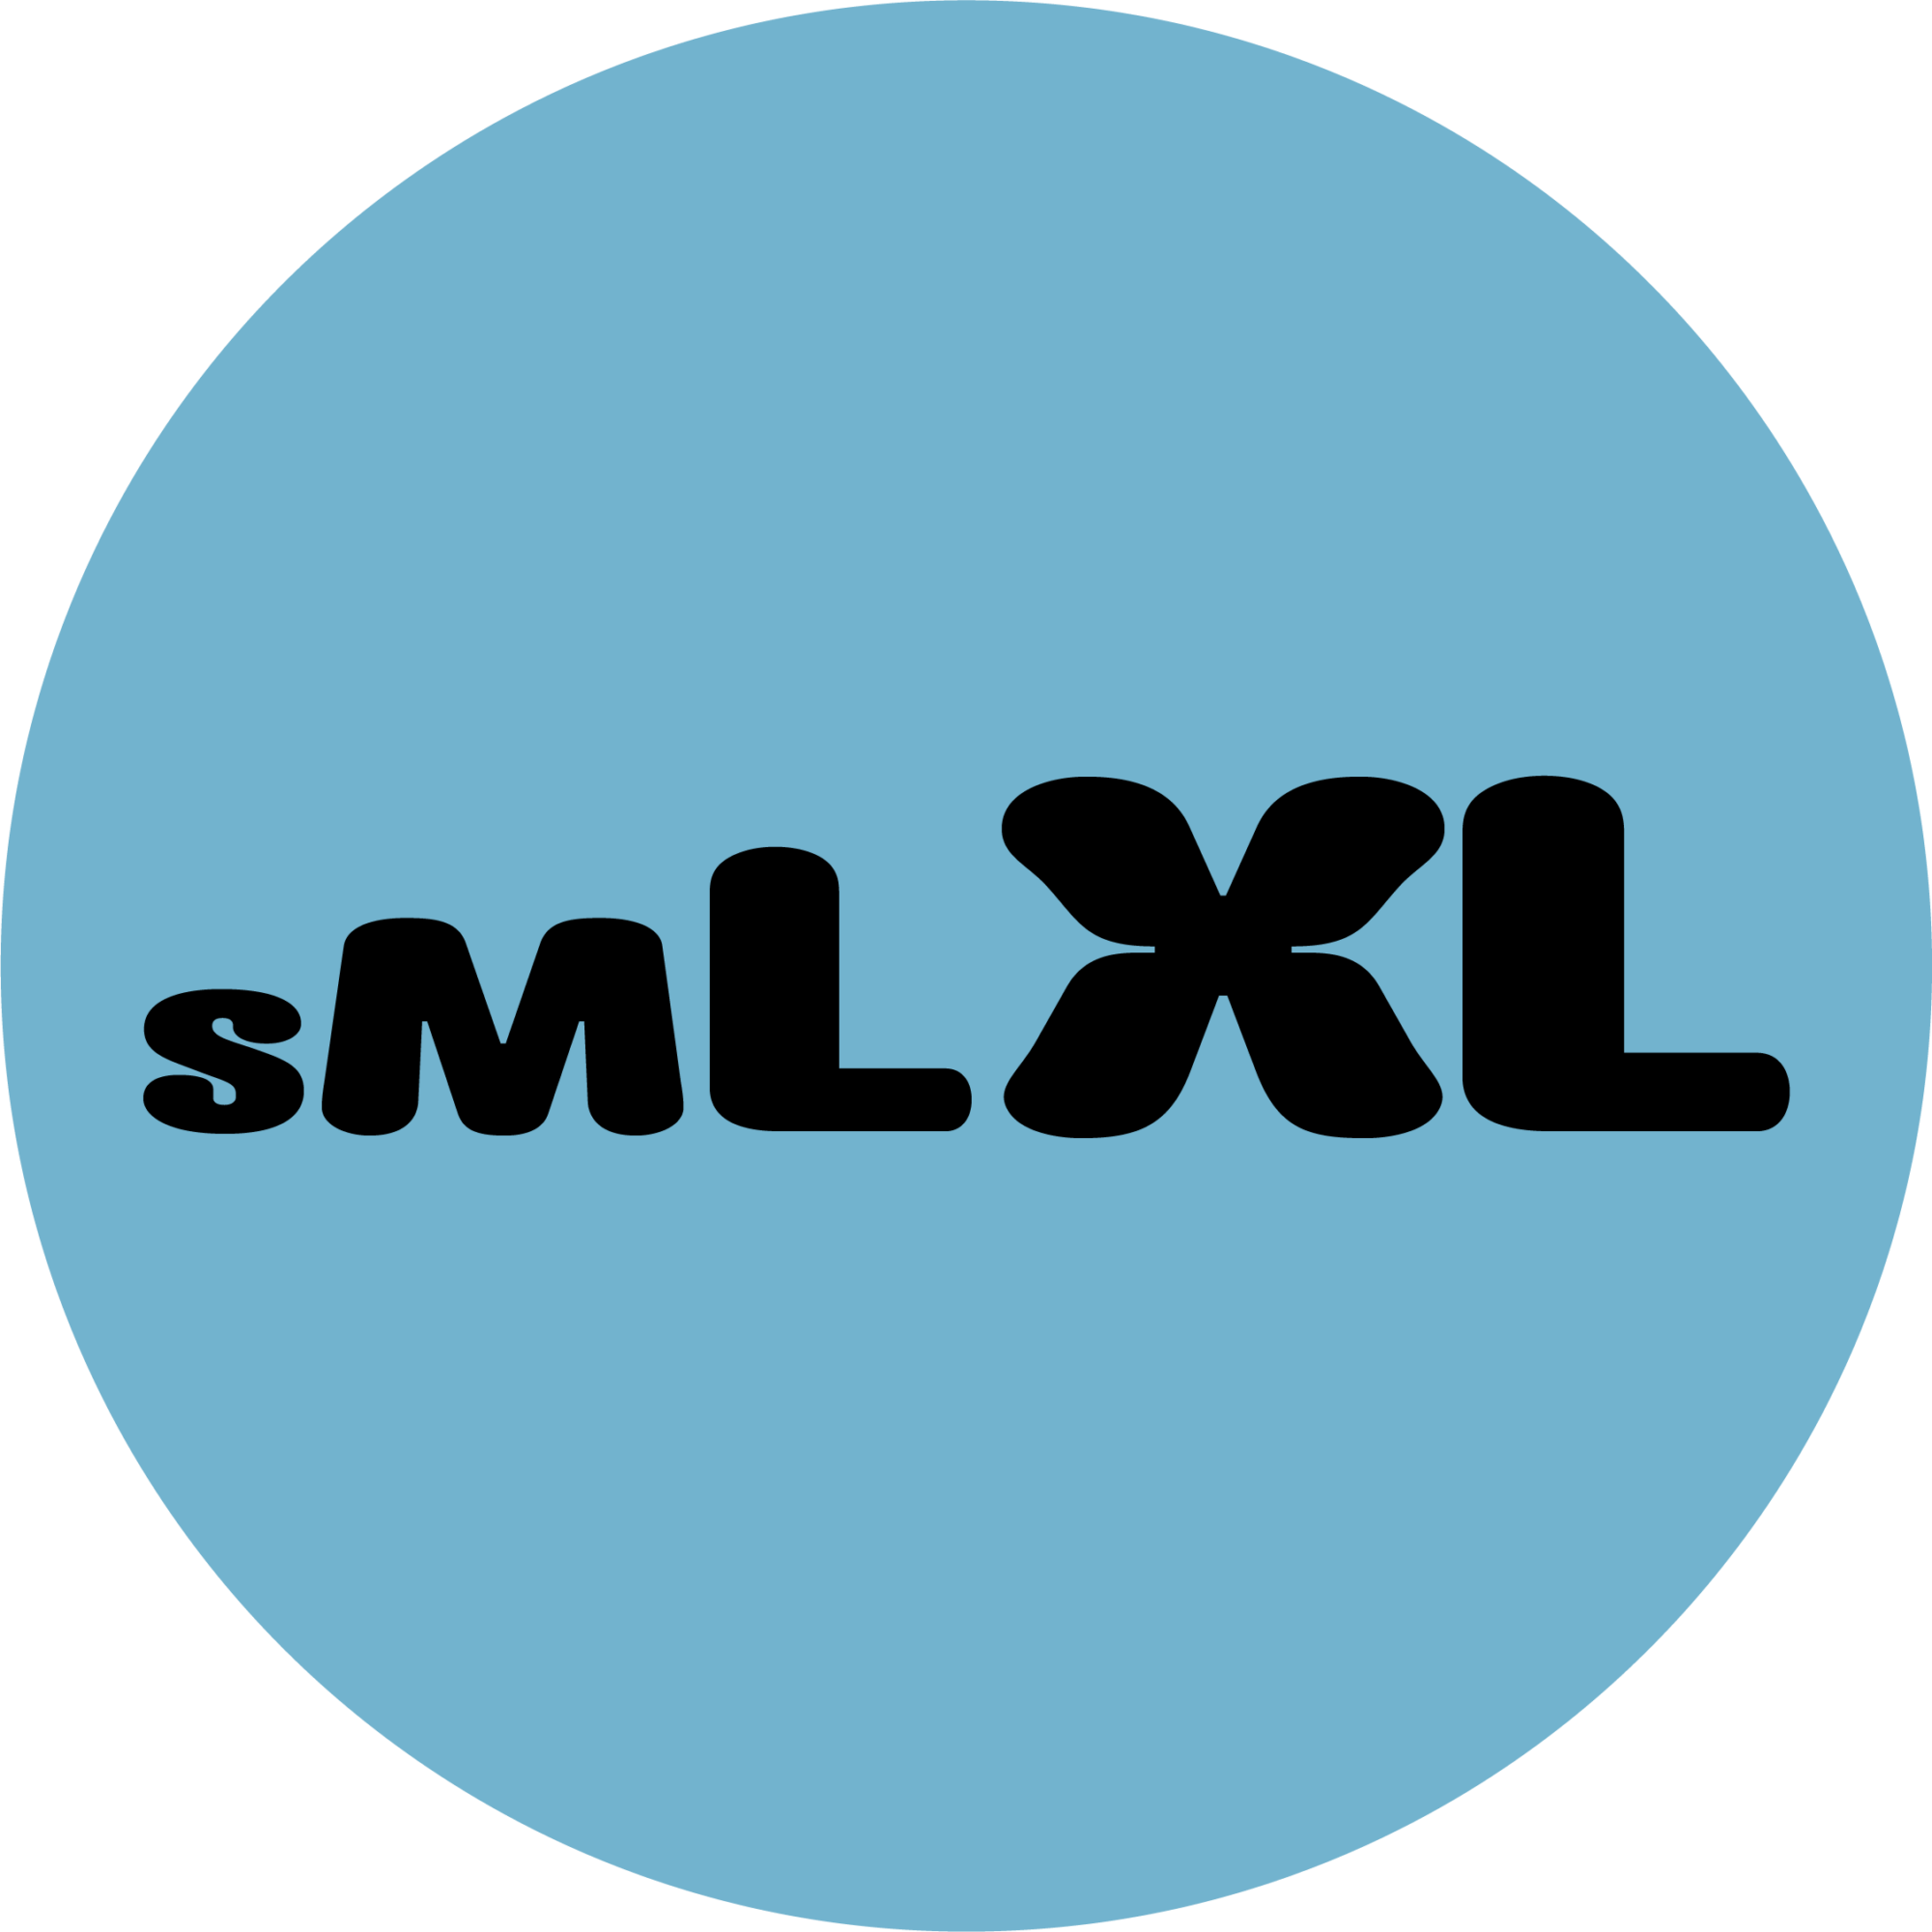 SMLXL logo